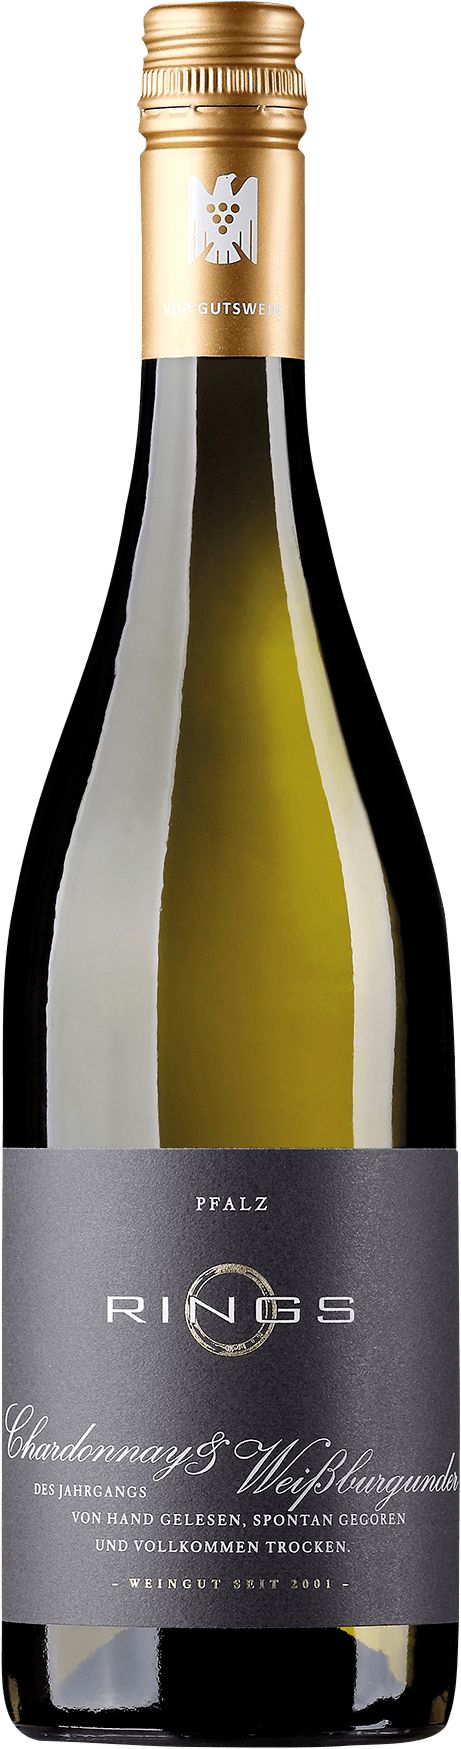 Chardonnay & Weissburgunder Qualitätswein trocken